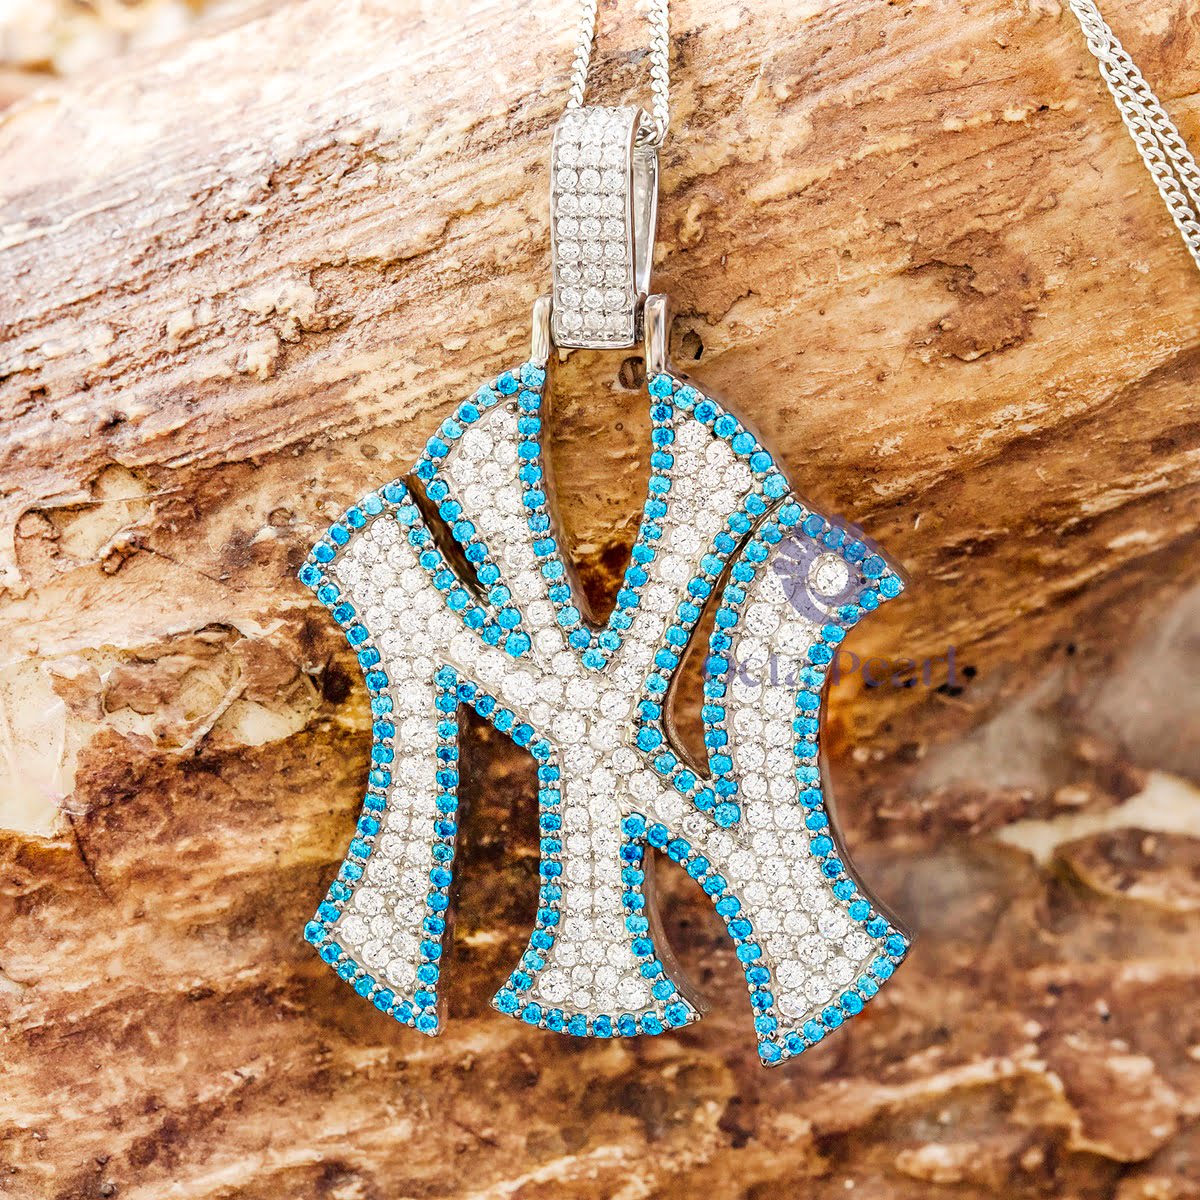 Blue NY Yankees 10k white gold pendant